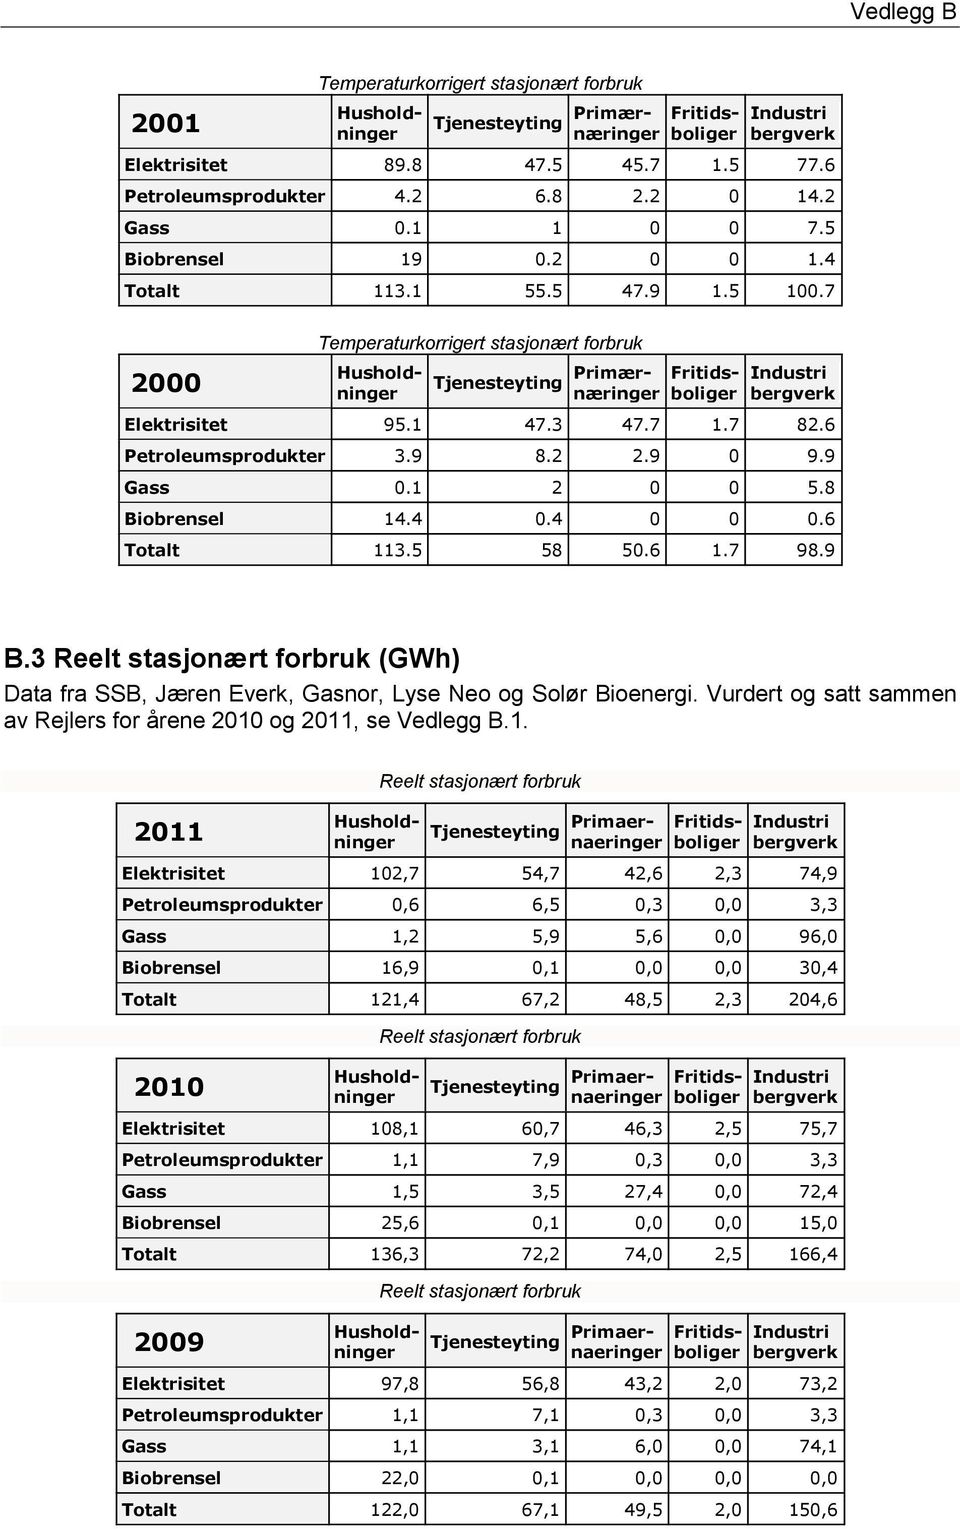 1 2 0 0 5.8 Biobrensel 14.4 0.4 0 0 0.6 Totalt 113.5 58 50.6 1.7 98.9 B.3 Reelt stasjonært forbruk (GWh) Data fra SSB, Jæren Everk, Gasnor, Lyse Neo og Solør Bioenergi.